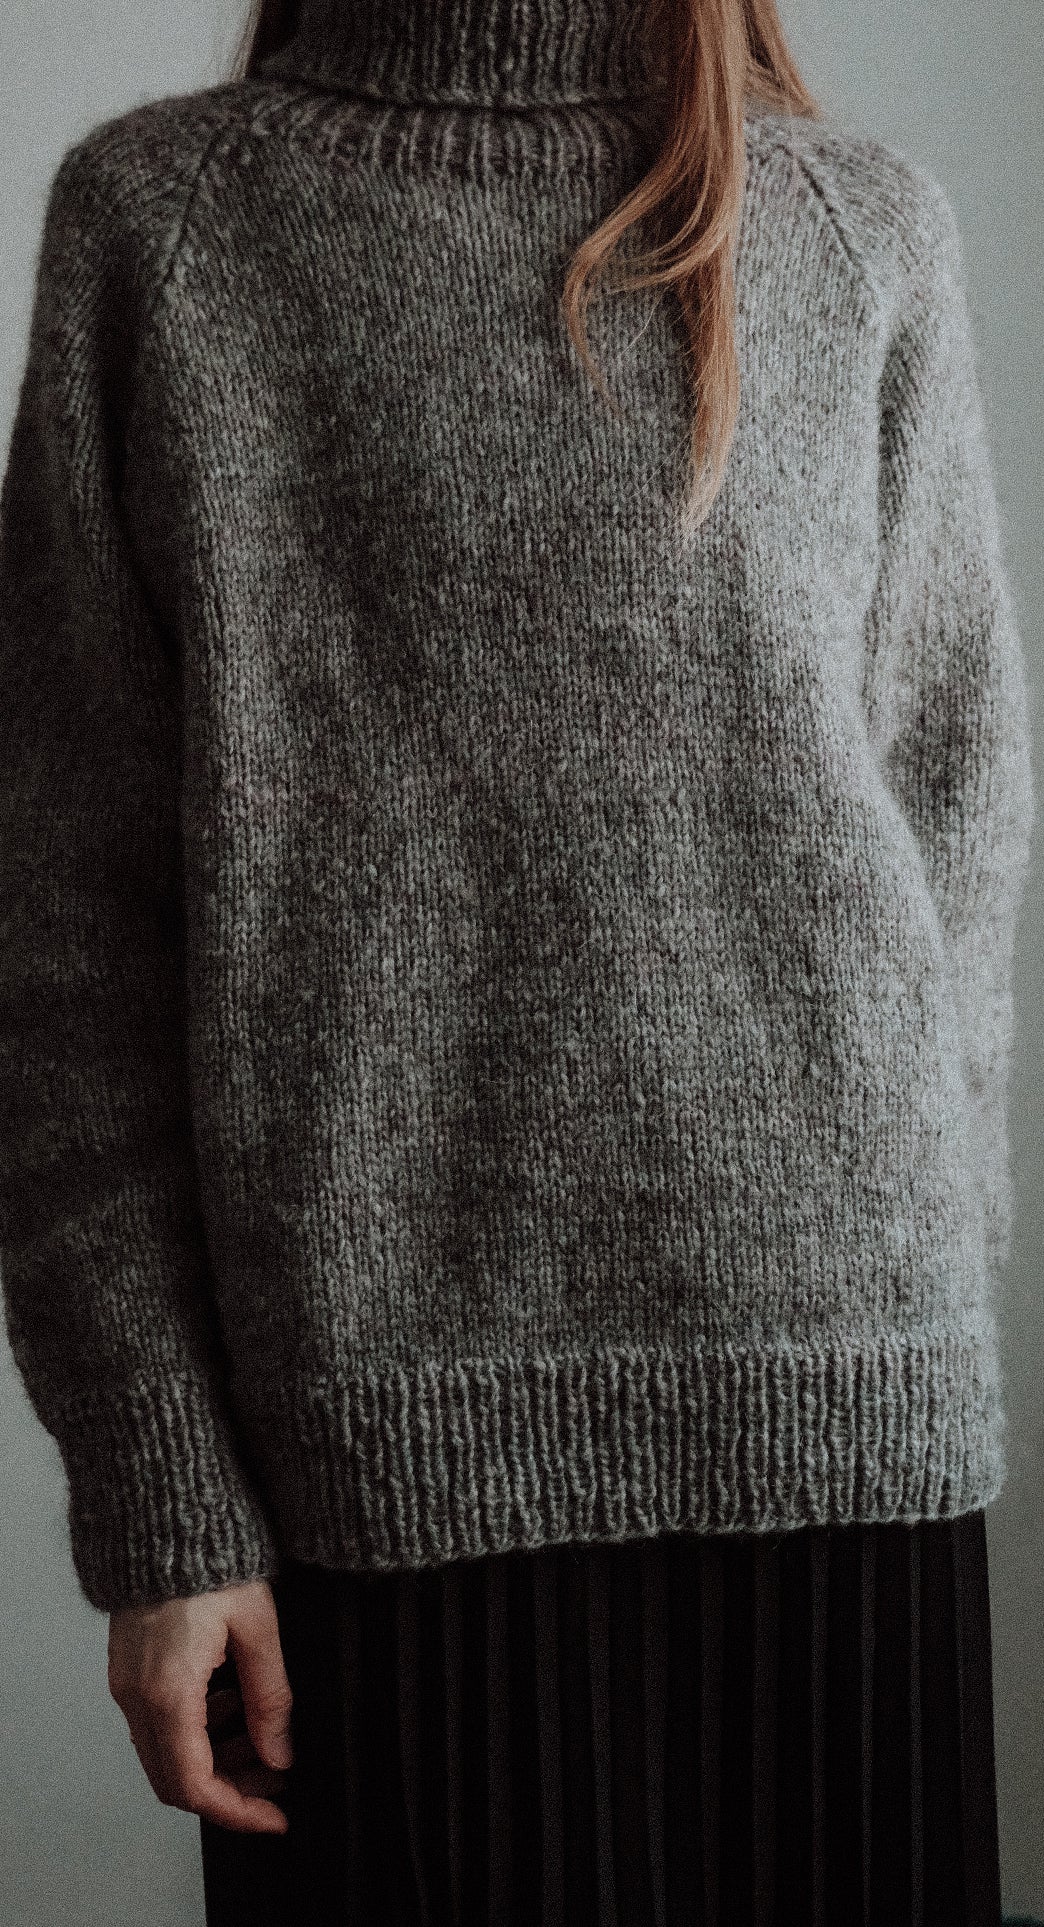 Lo·ki (Loki) Raglan Sweater - Knitting Pattern